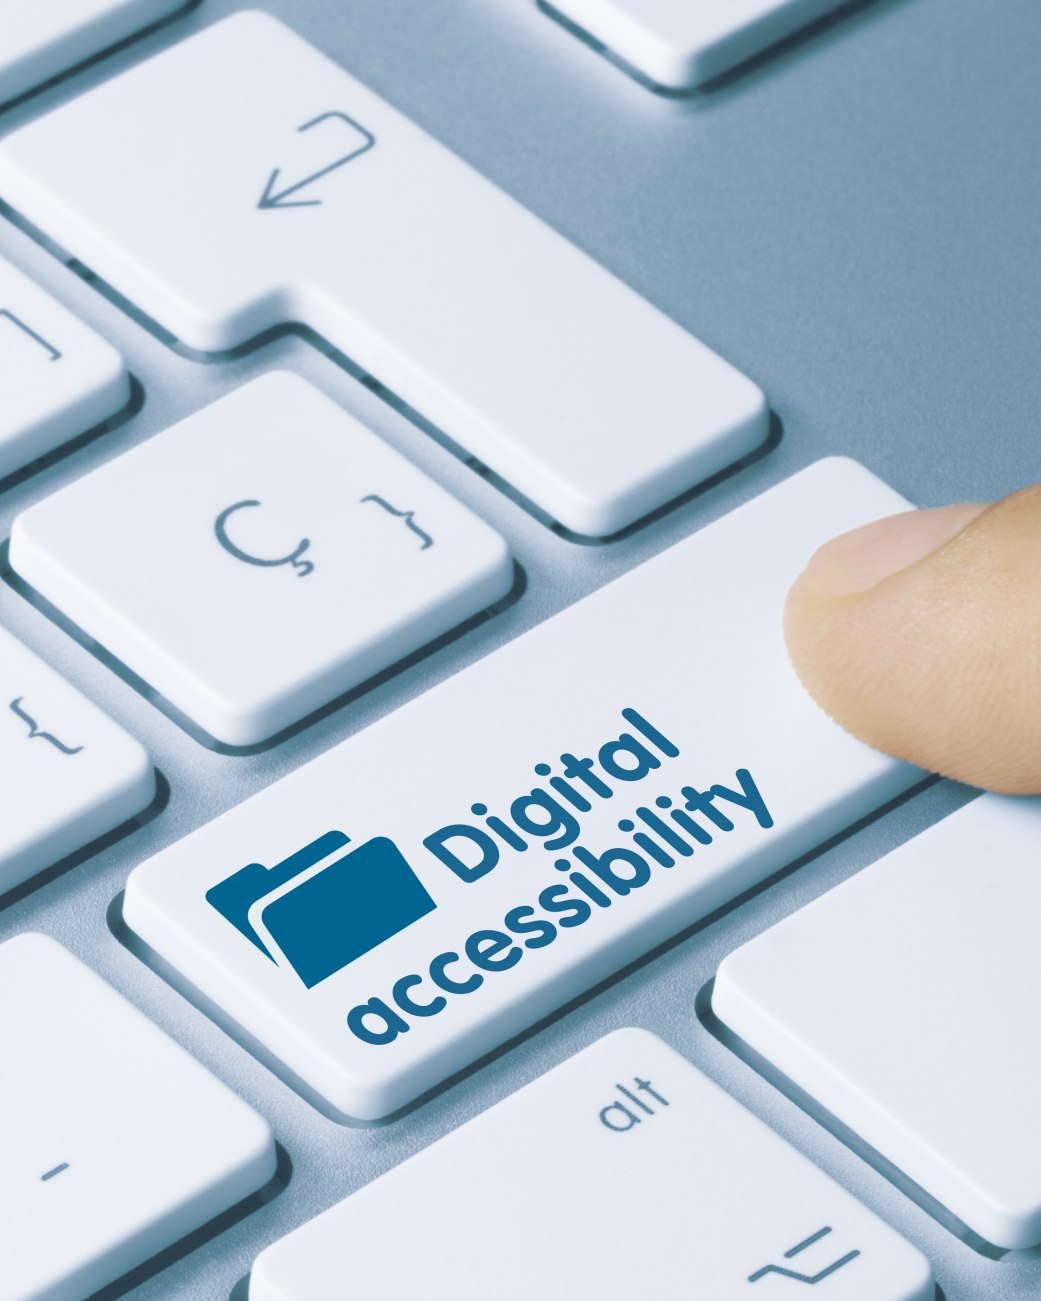 Das Bild zeigt eine Comutertastatur mit der Aufschrift &quot;Digital accessibility&quot; auf einer Taste.